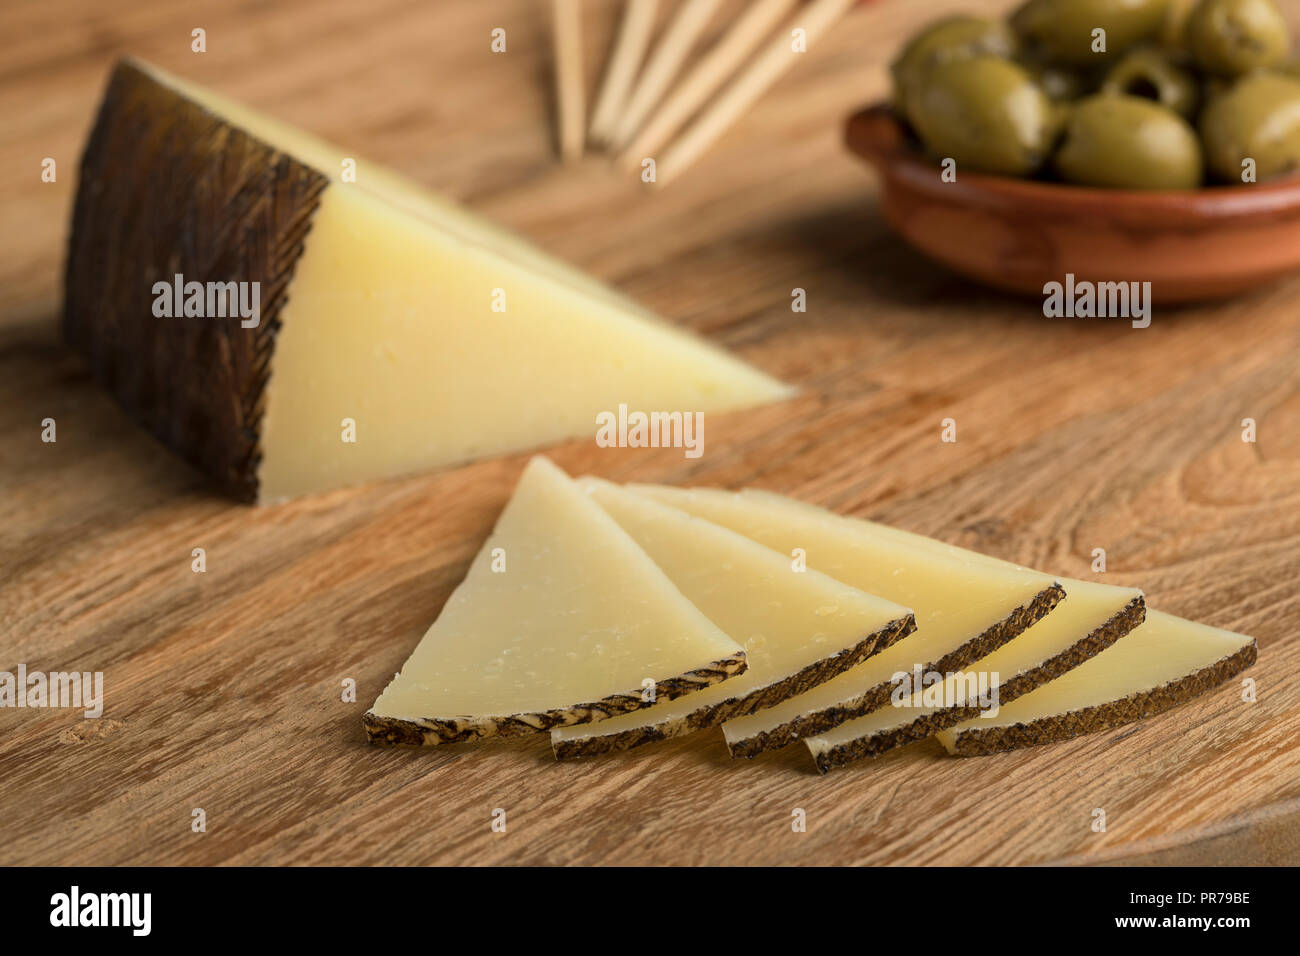 Tranches de fromage Manchego espagnol traditionnel et les olives sur l'arrière-plan Banque D'Images